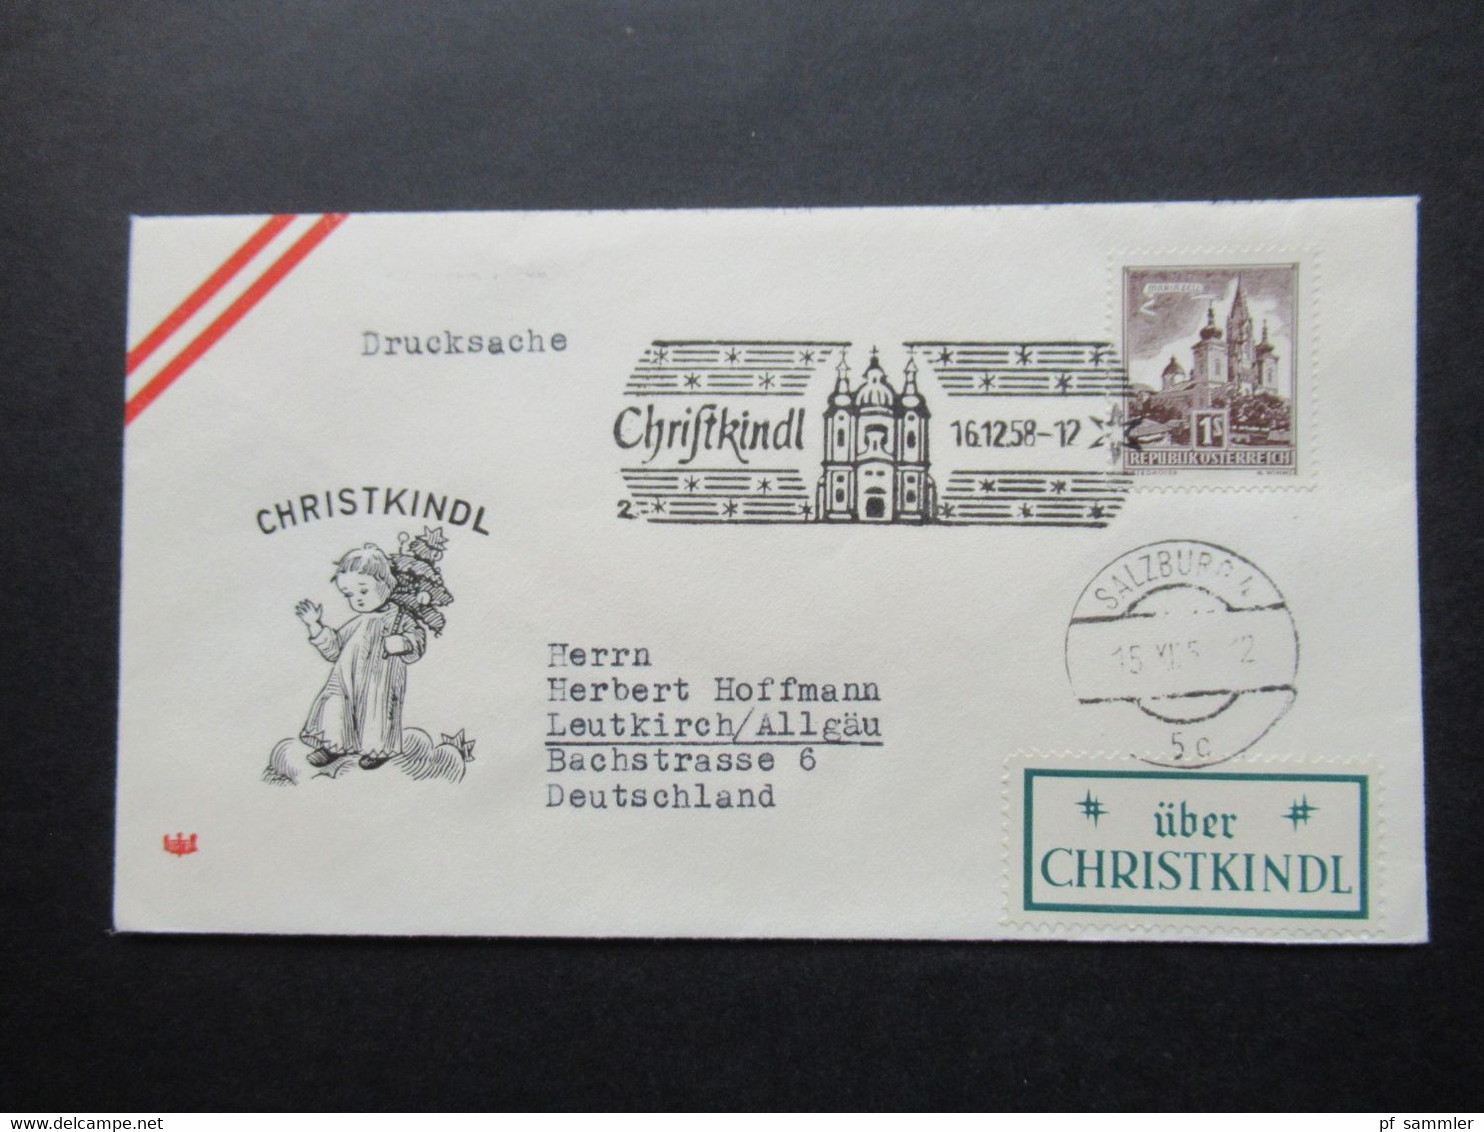 Österreich Christkindl 1954 - 1960 auch verschiedene Stempel u. Leitzettel und bessere Verwendungen insgesamt 30 Belege